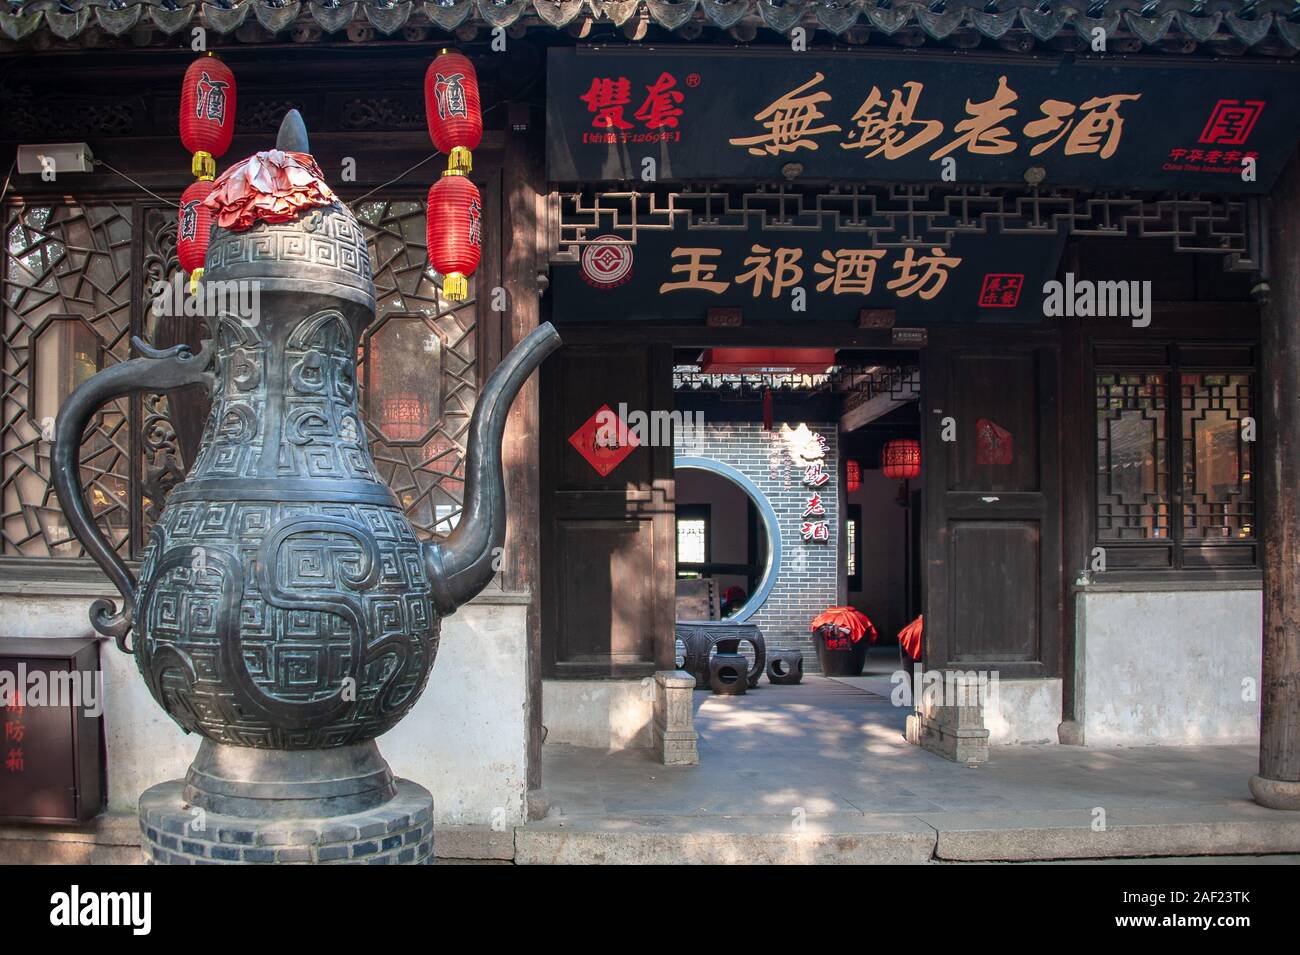 Dans l'architecture traditionnelle chinoise Huishan, ville ancienne. Extérieur du bâtiment avec théière géante en bronze à l'entrée du salon de thé Banque D'Images